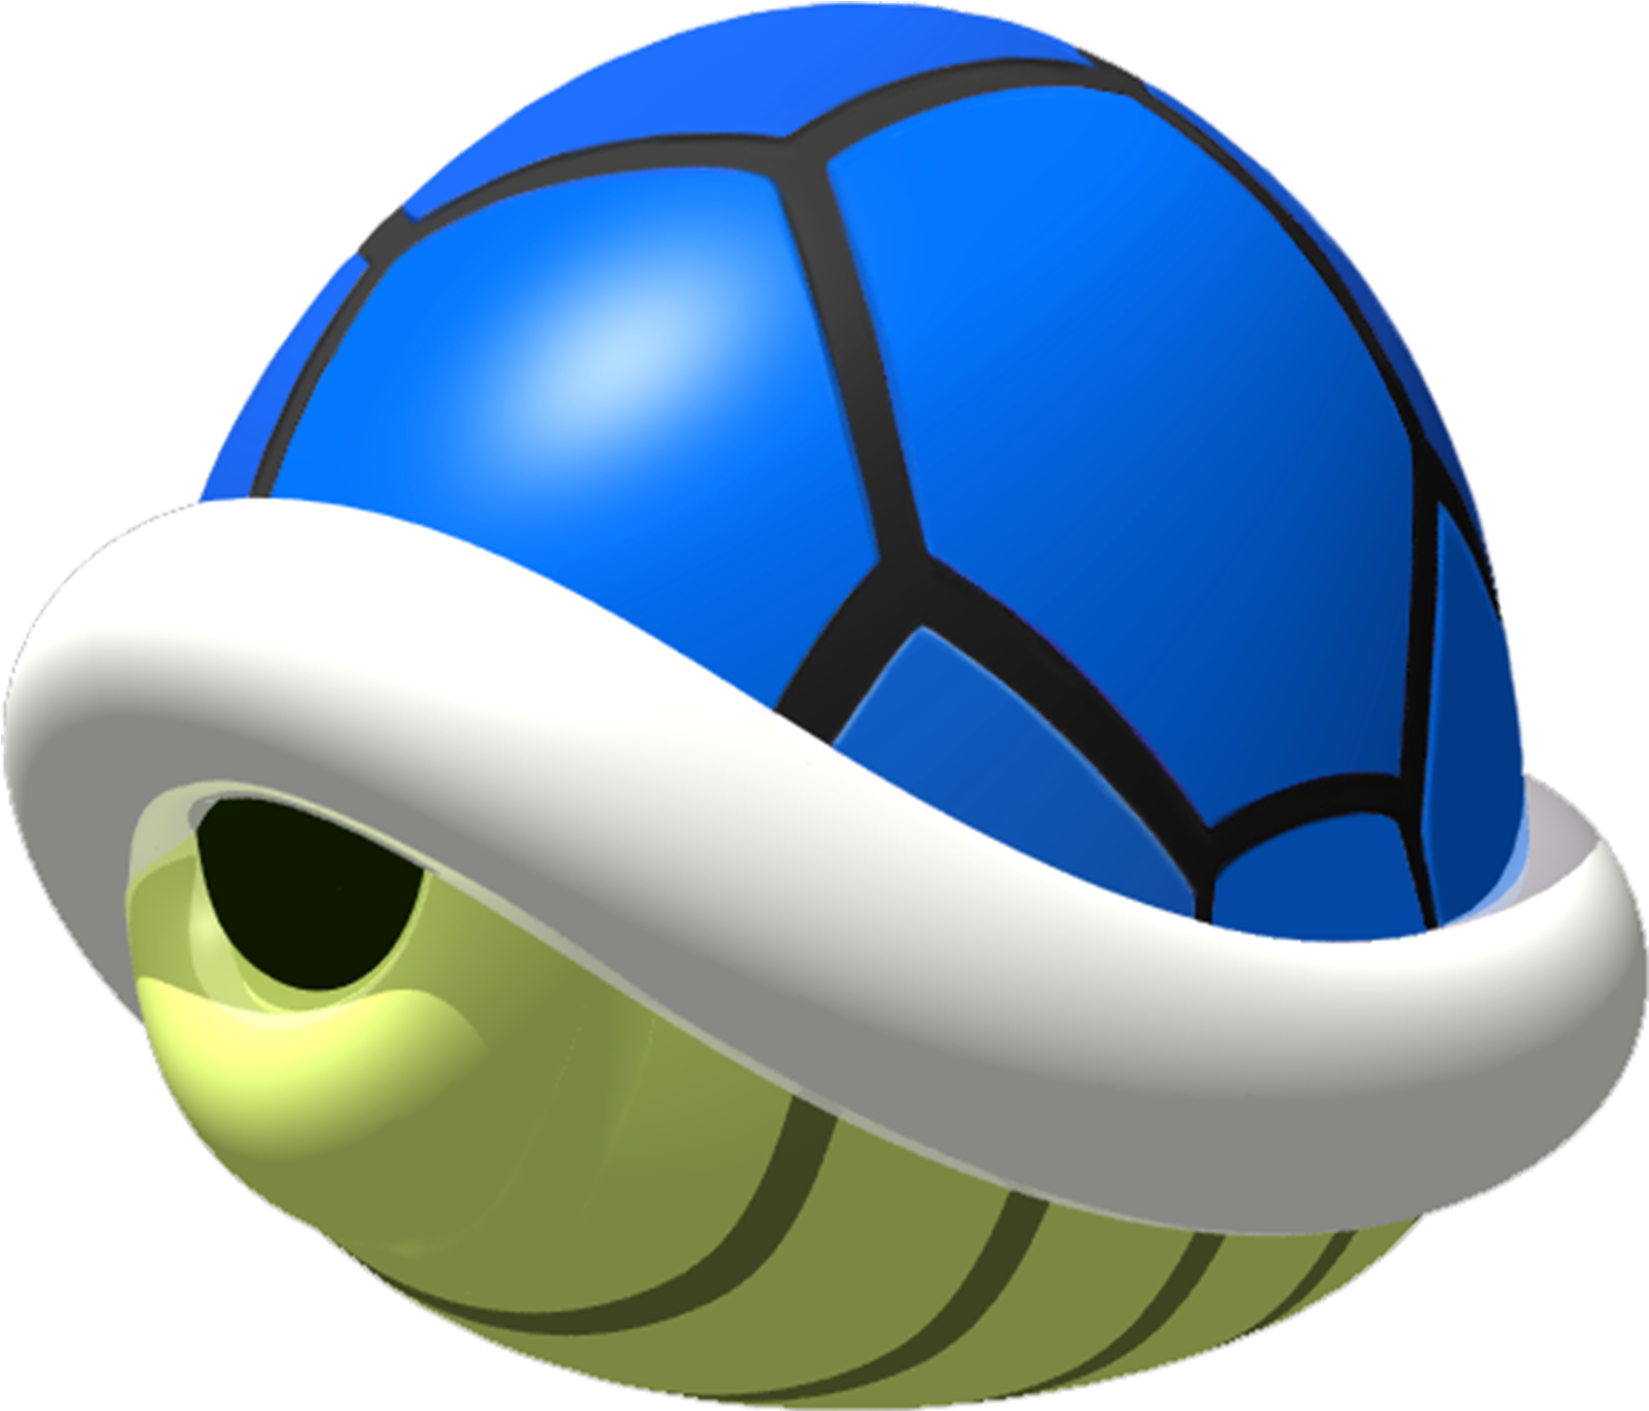 Blue Shell - Blue Turtle Shell Mario (1660x1428)